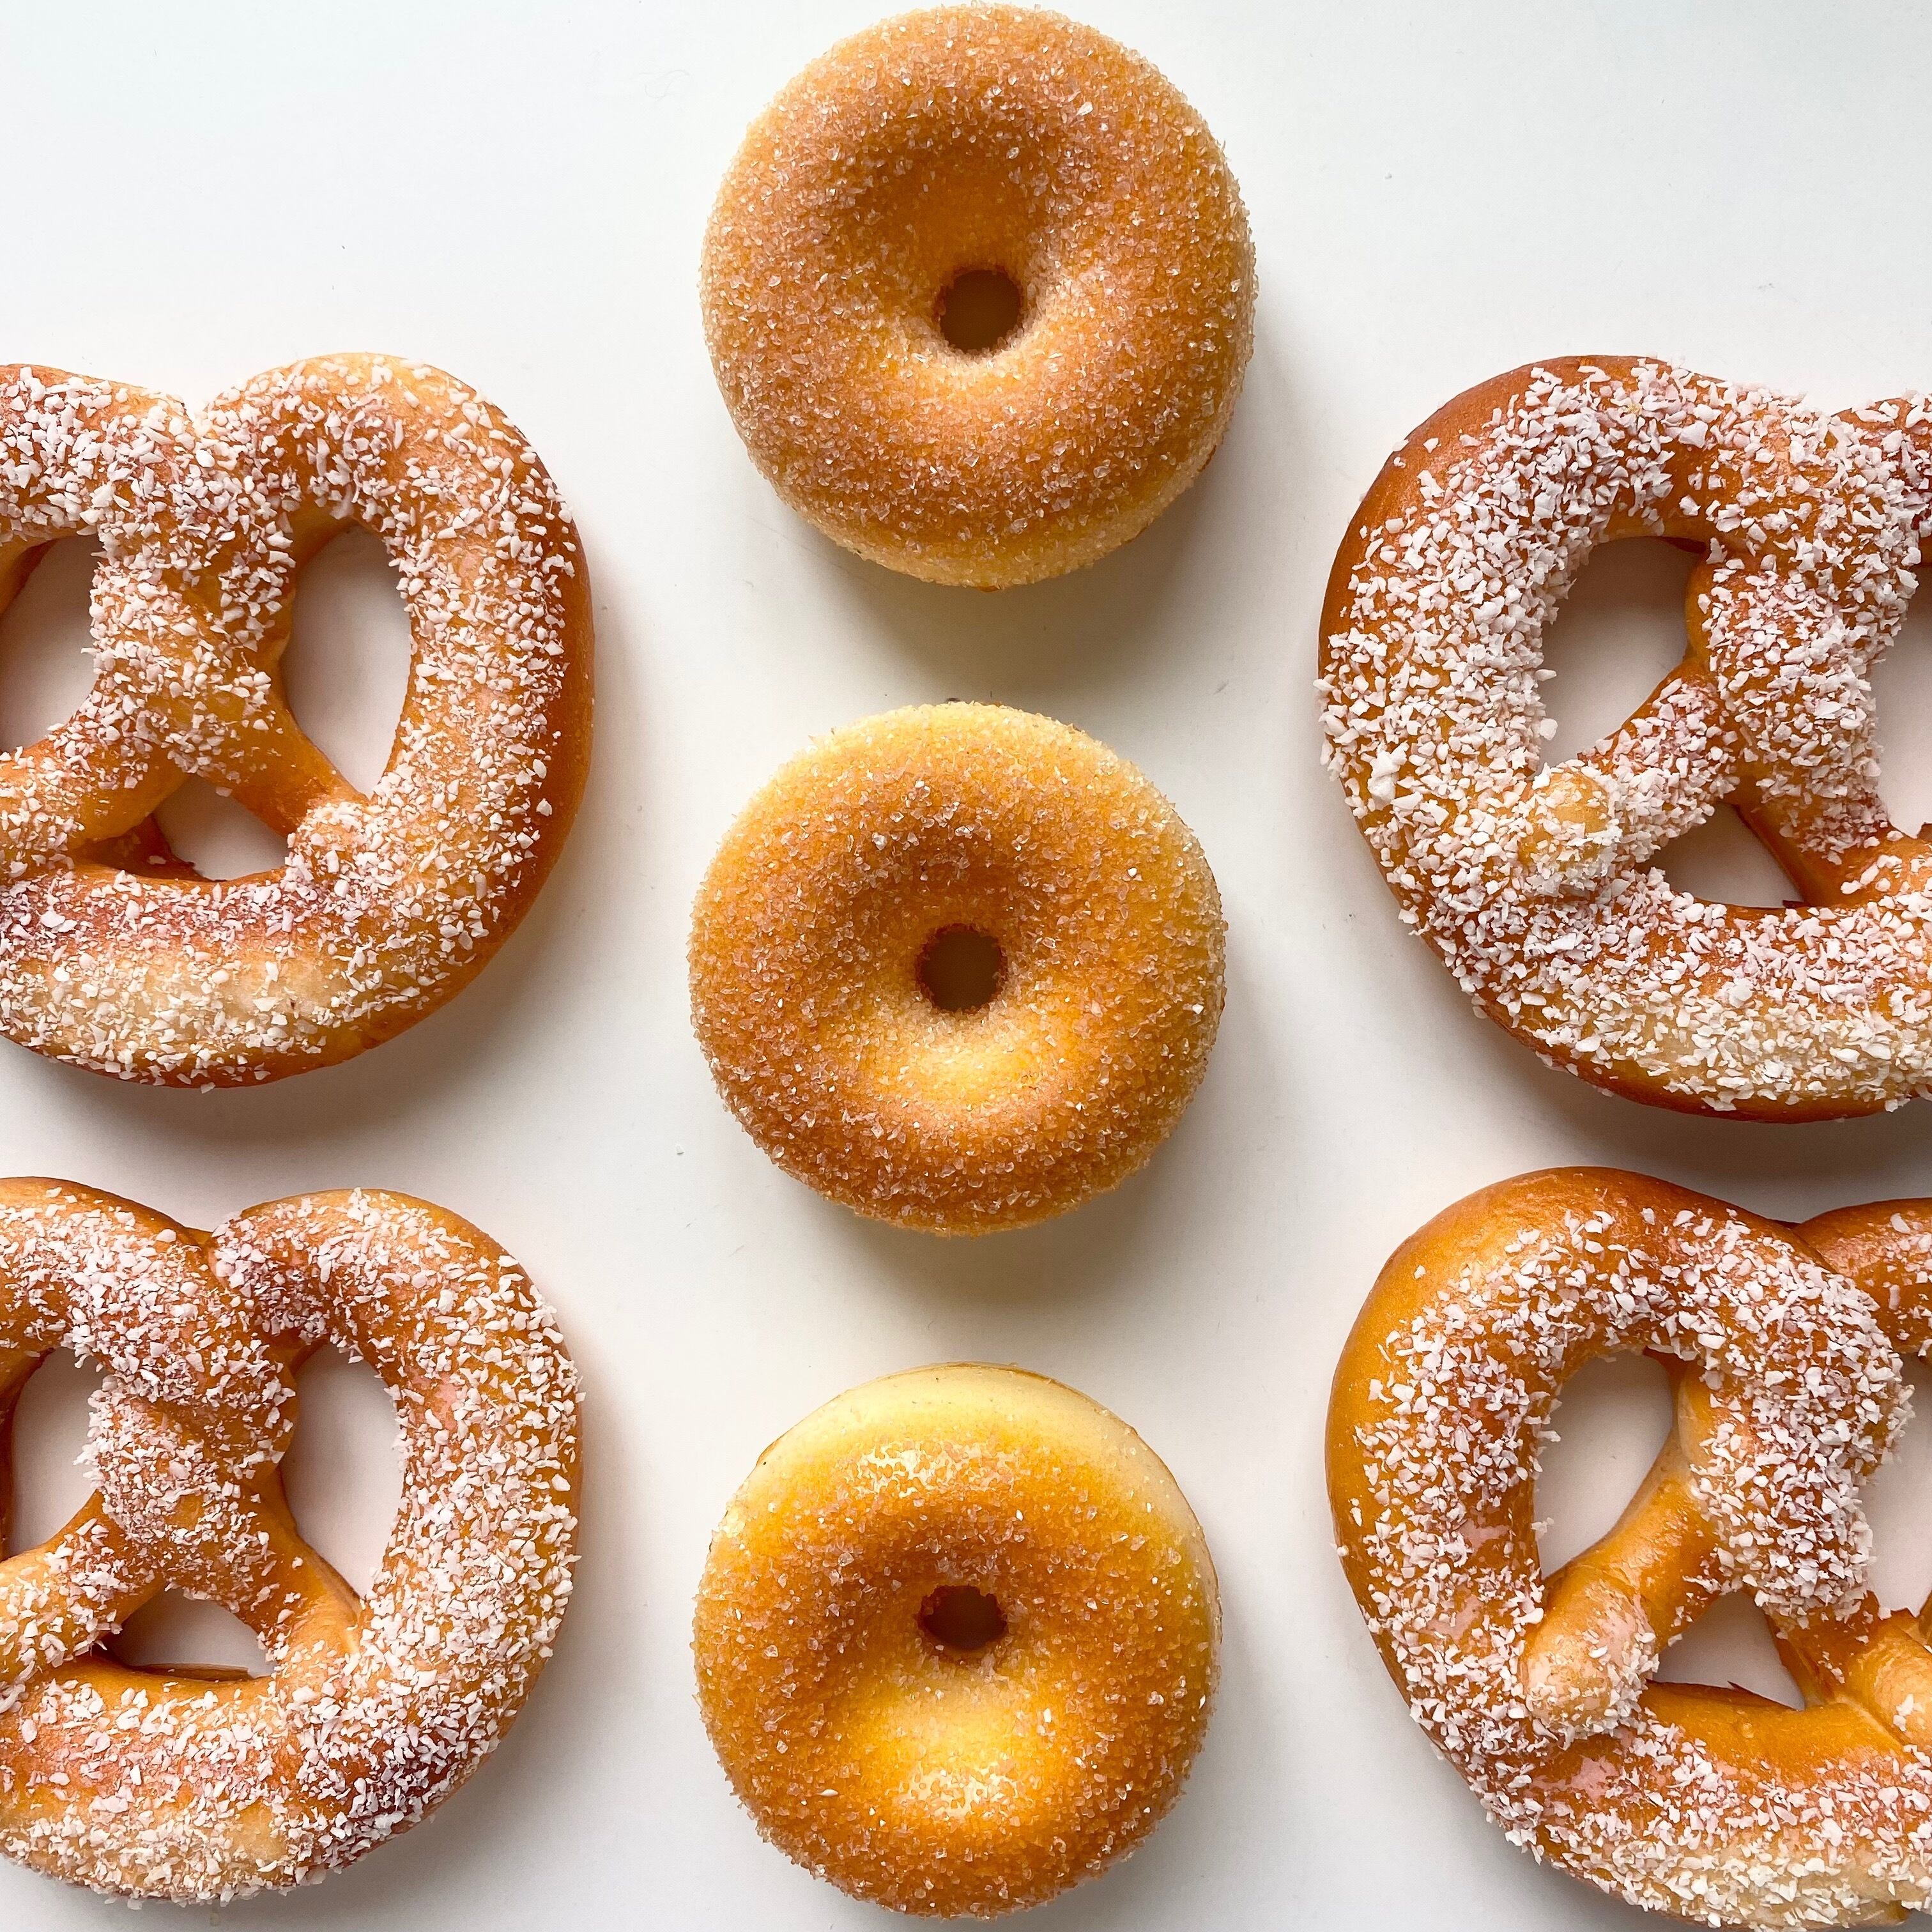 pretzel&donuts 4set